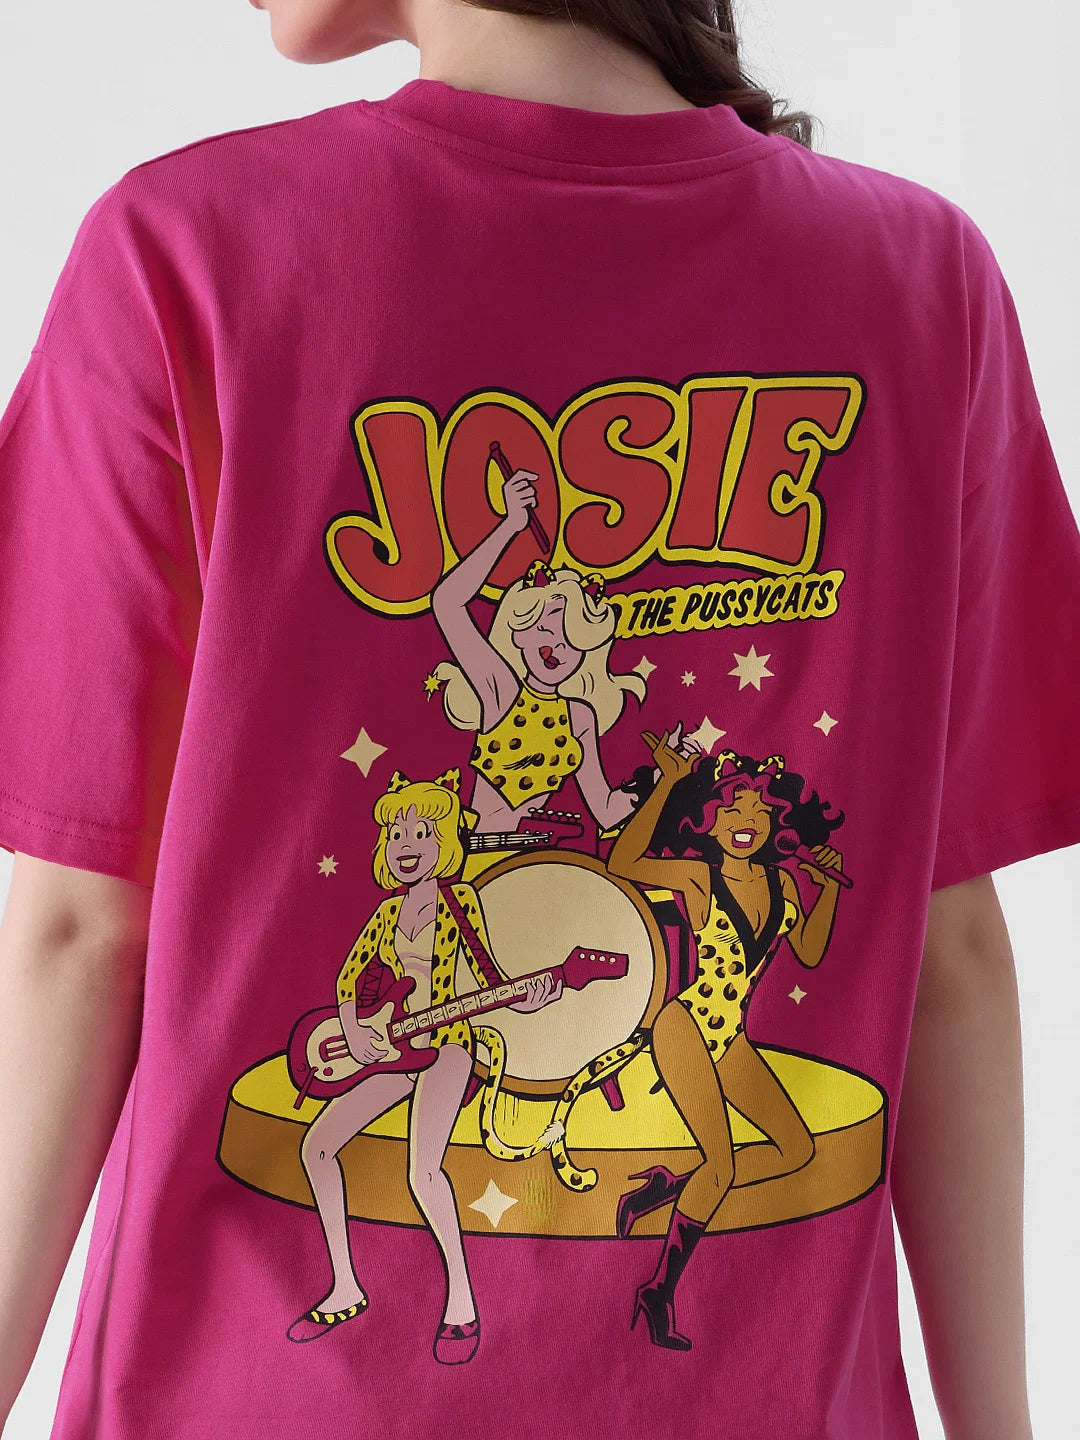 Archie Josie Band (UK version)